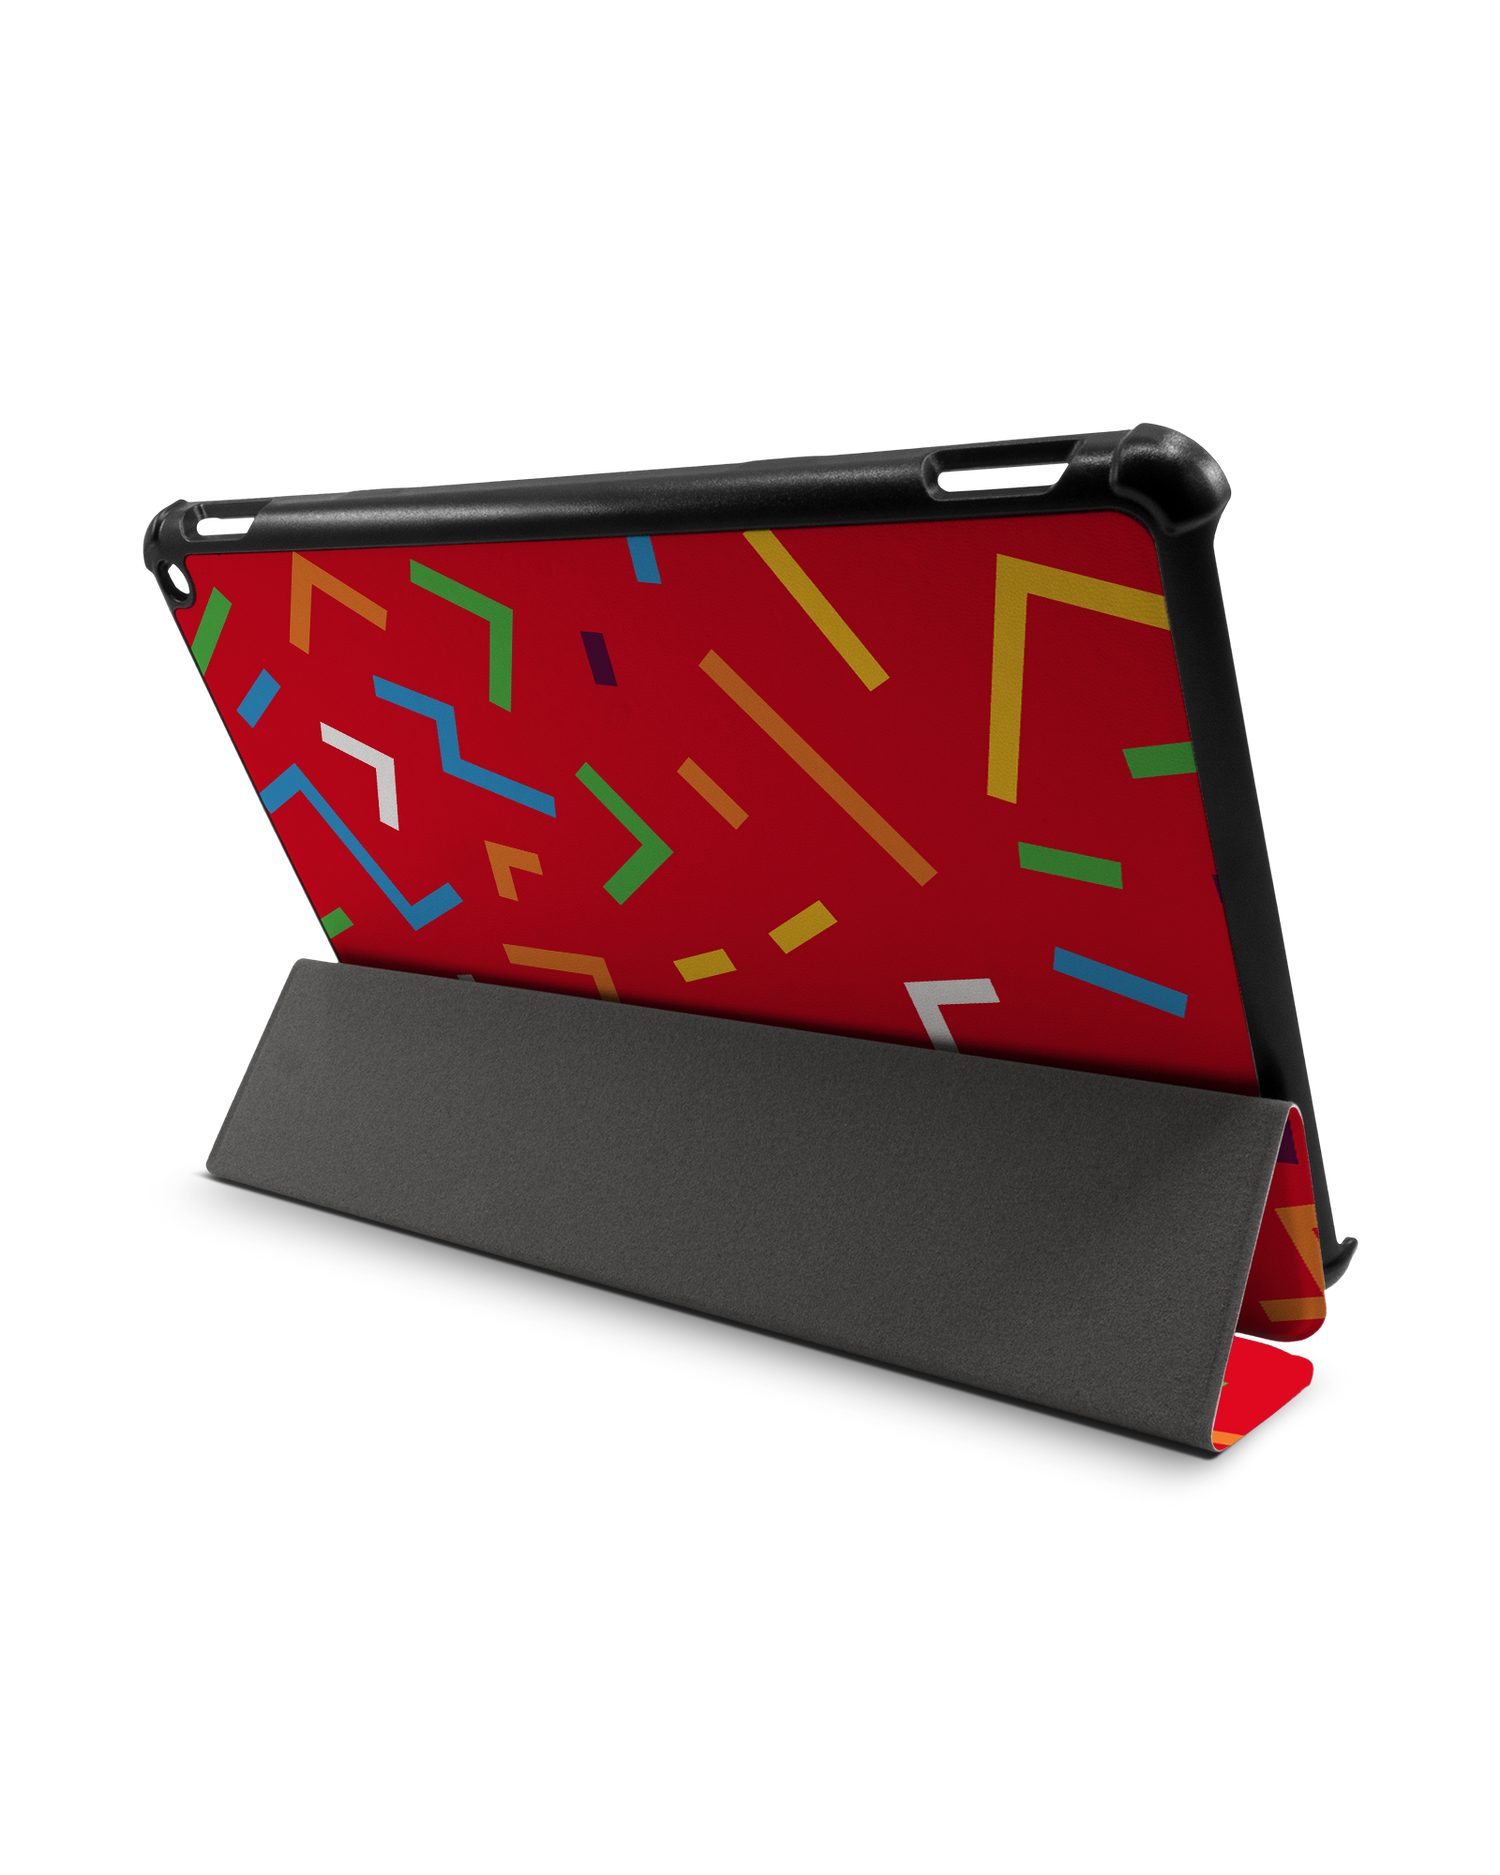 Pringles Confetti Tablet Smart Case für Amazon Fire HD 10 (2021): Aufgestellt im Querformat